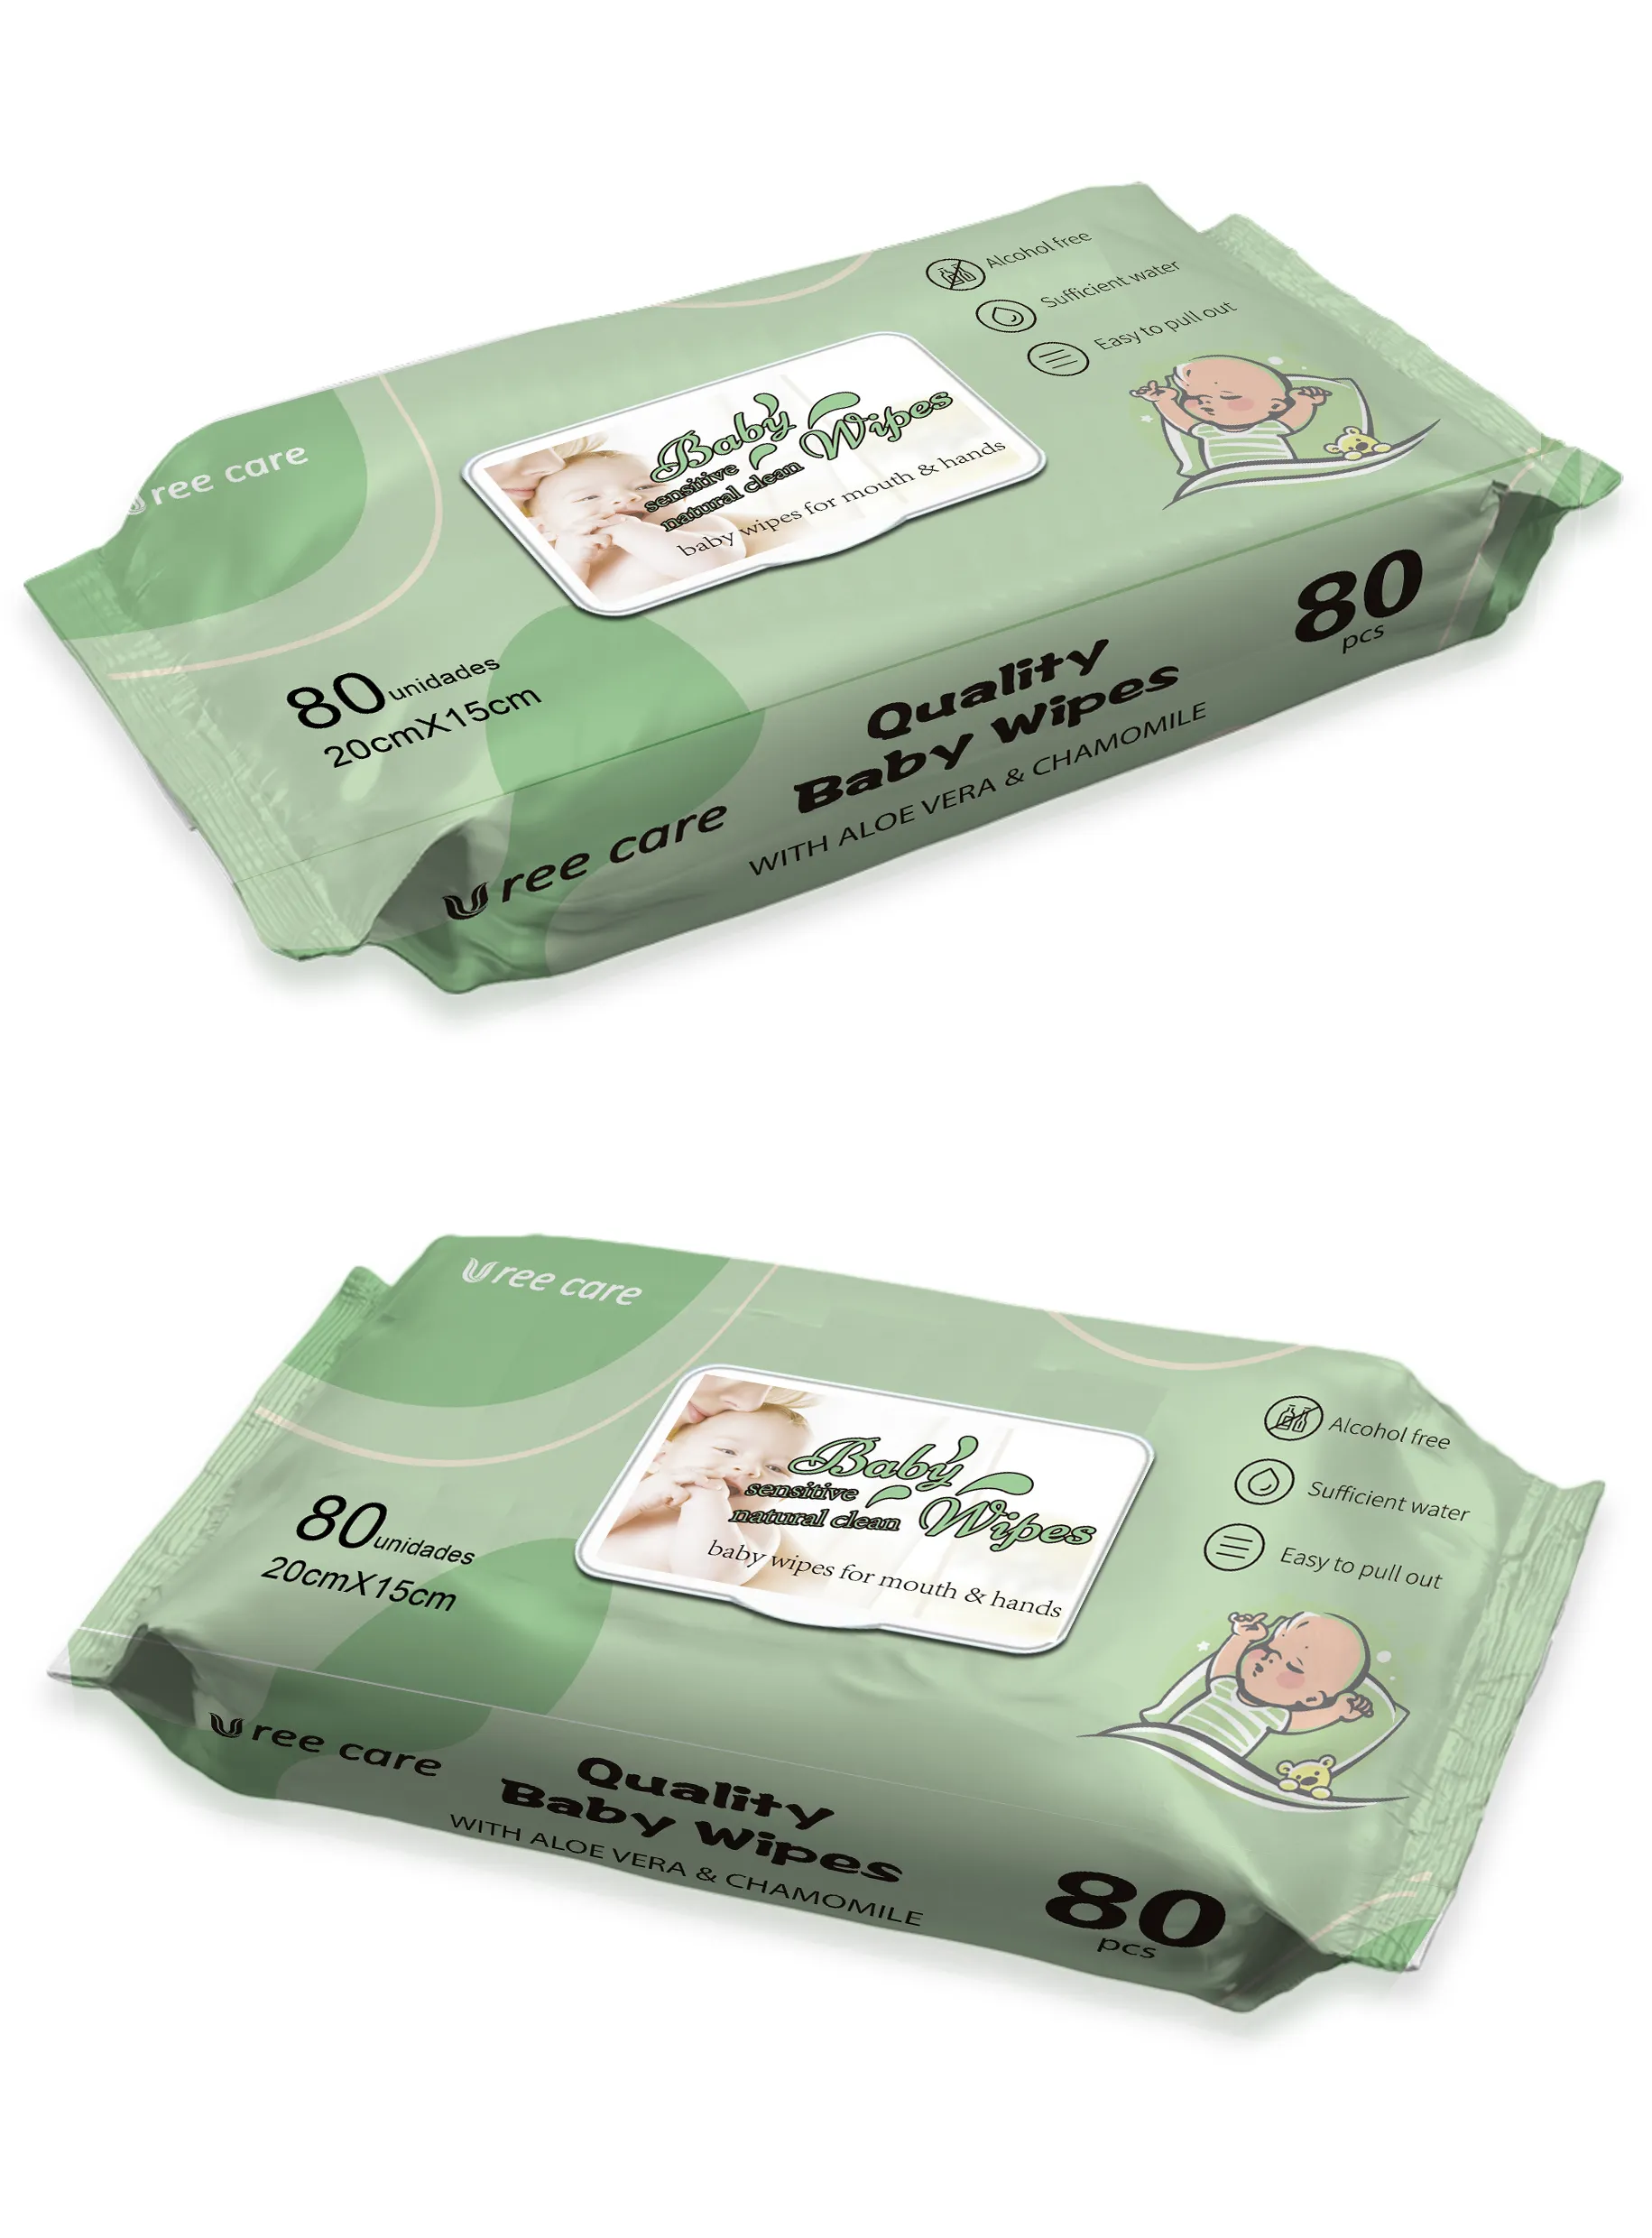 Commercio all'ingrosso per la cura della pelle senza alcool in cotone organico salviettine umidificate per bambini etichetta privata OEM per la pulizia delle salviette